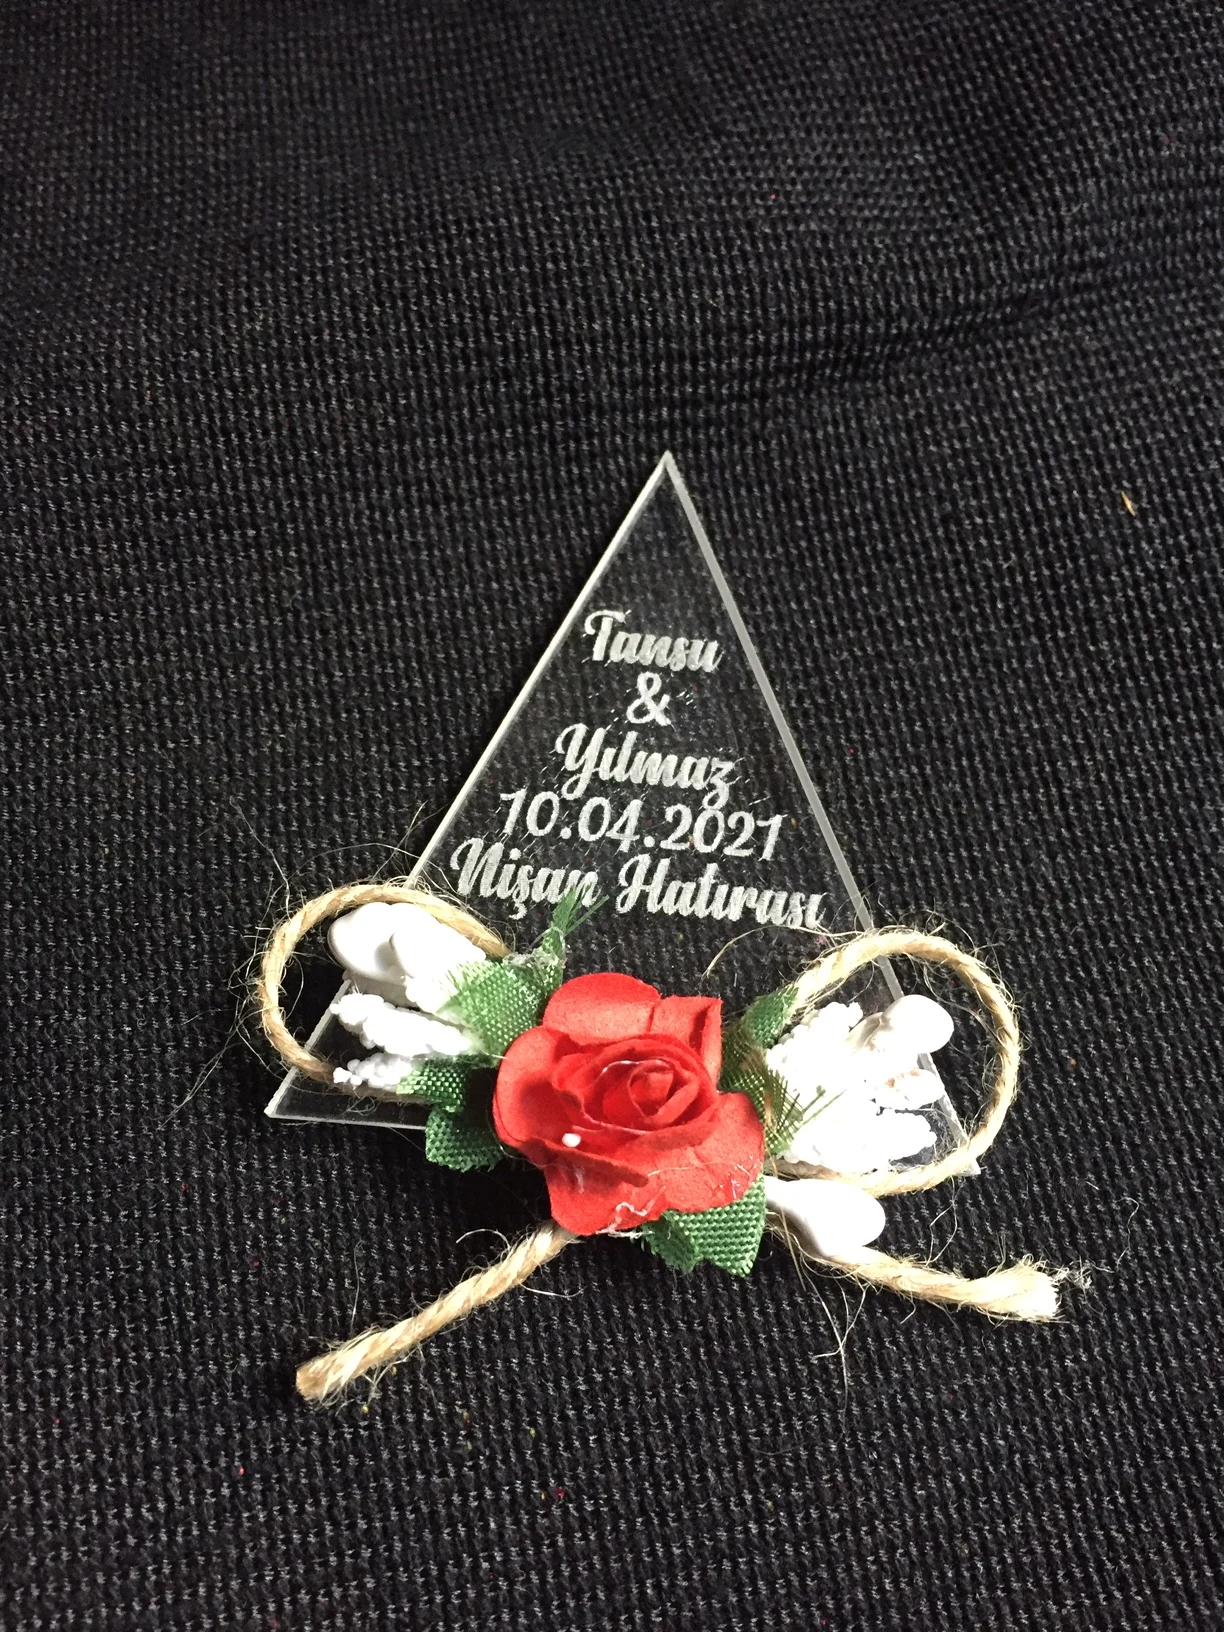 

İsme özel şeffaf pleksi düğün nişan magnetleri hediyelik seromoni hediyesi romantik çiçek 24 adet